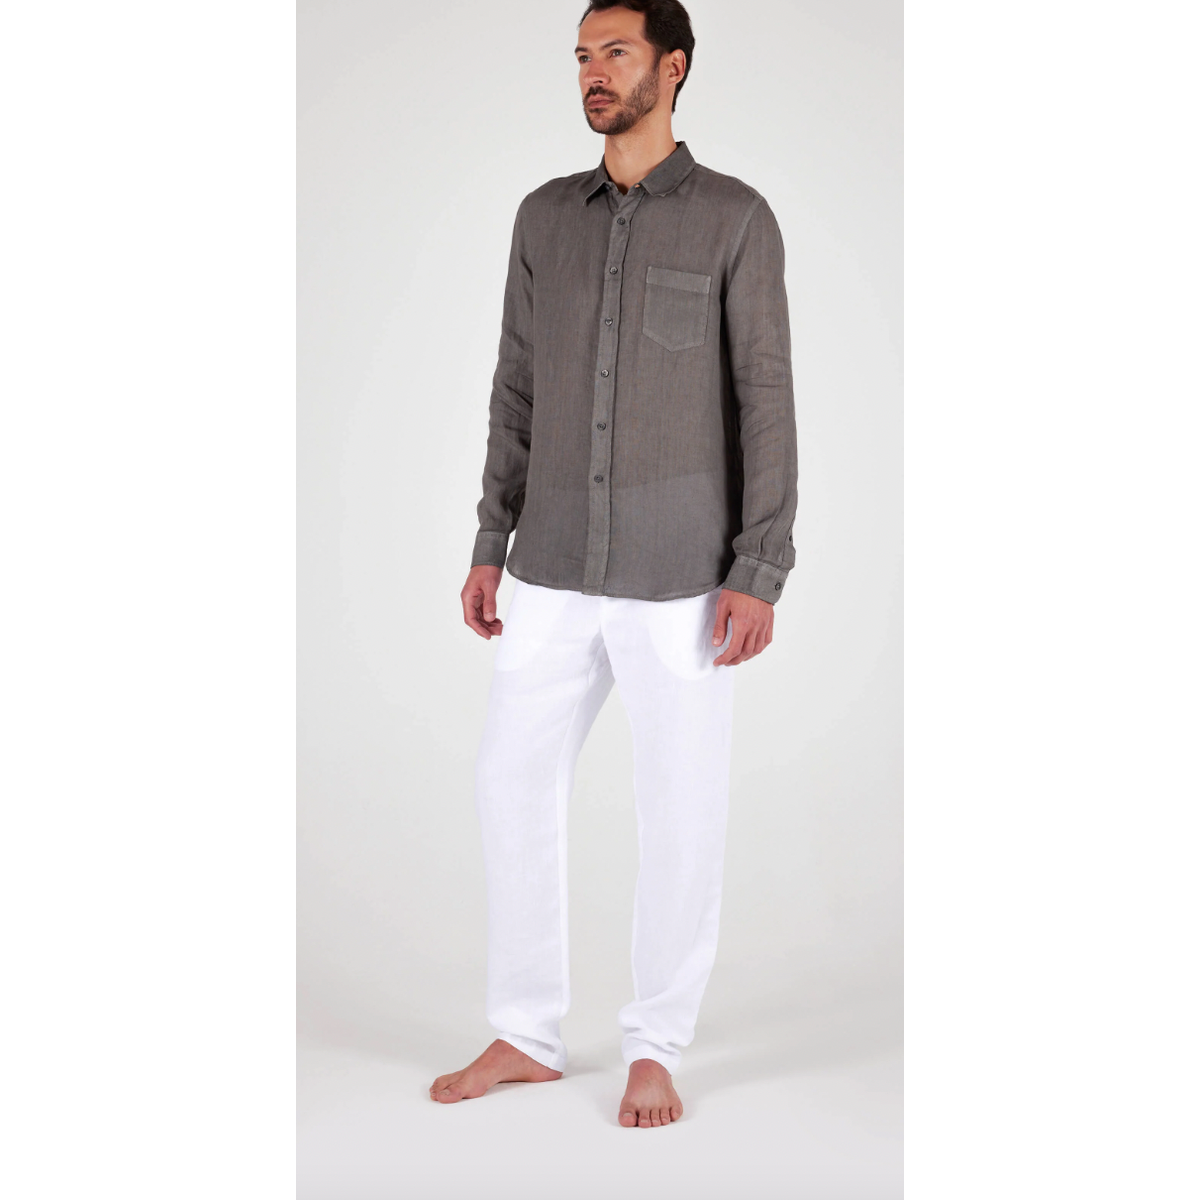 120% Lino Elephant Soft Fade Button Shirt